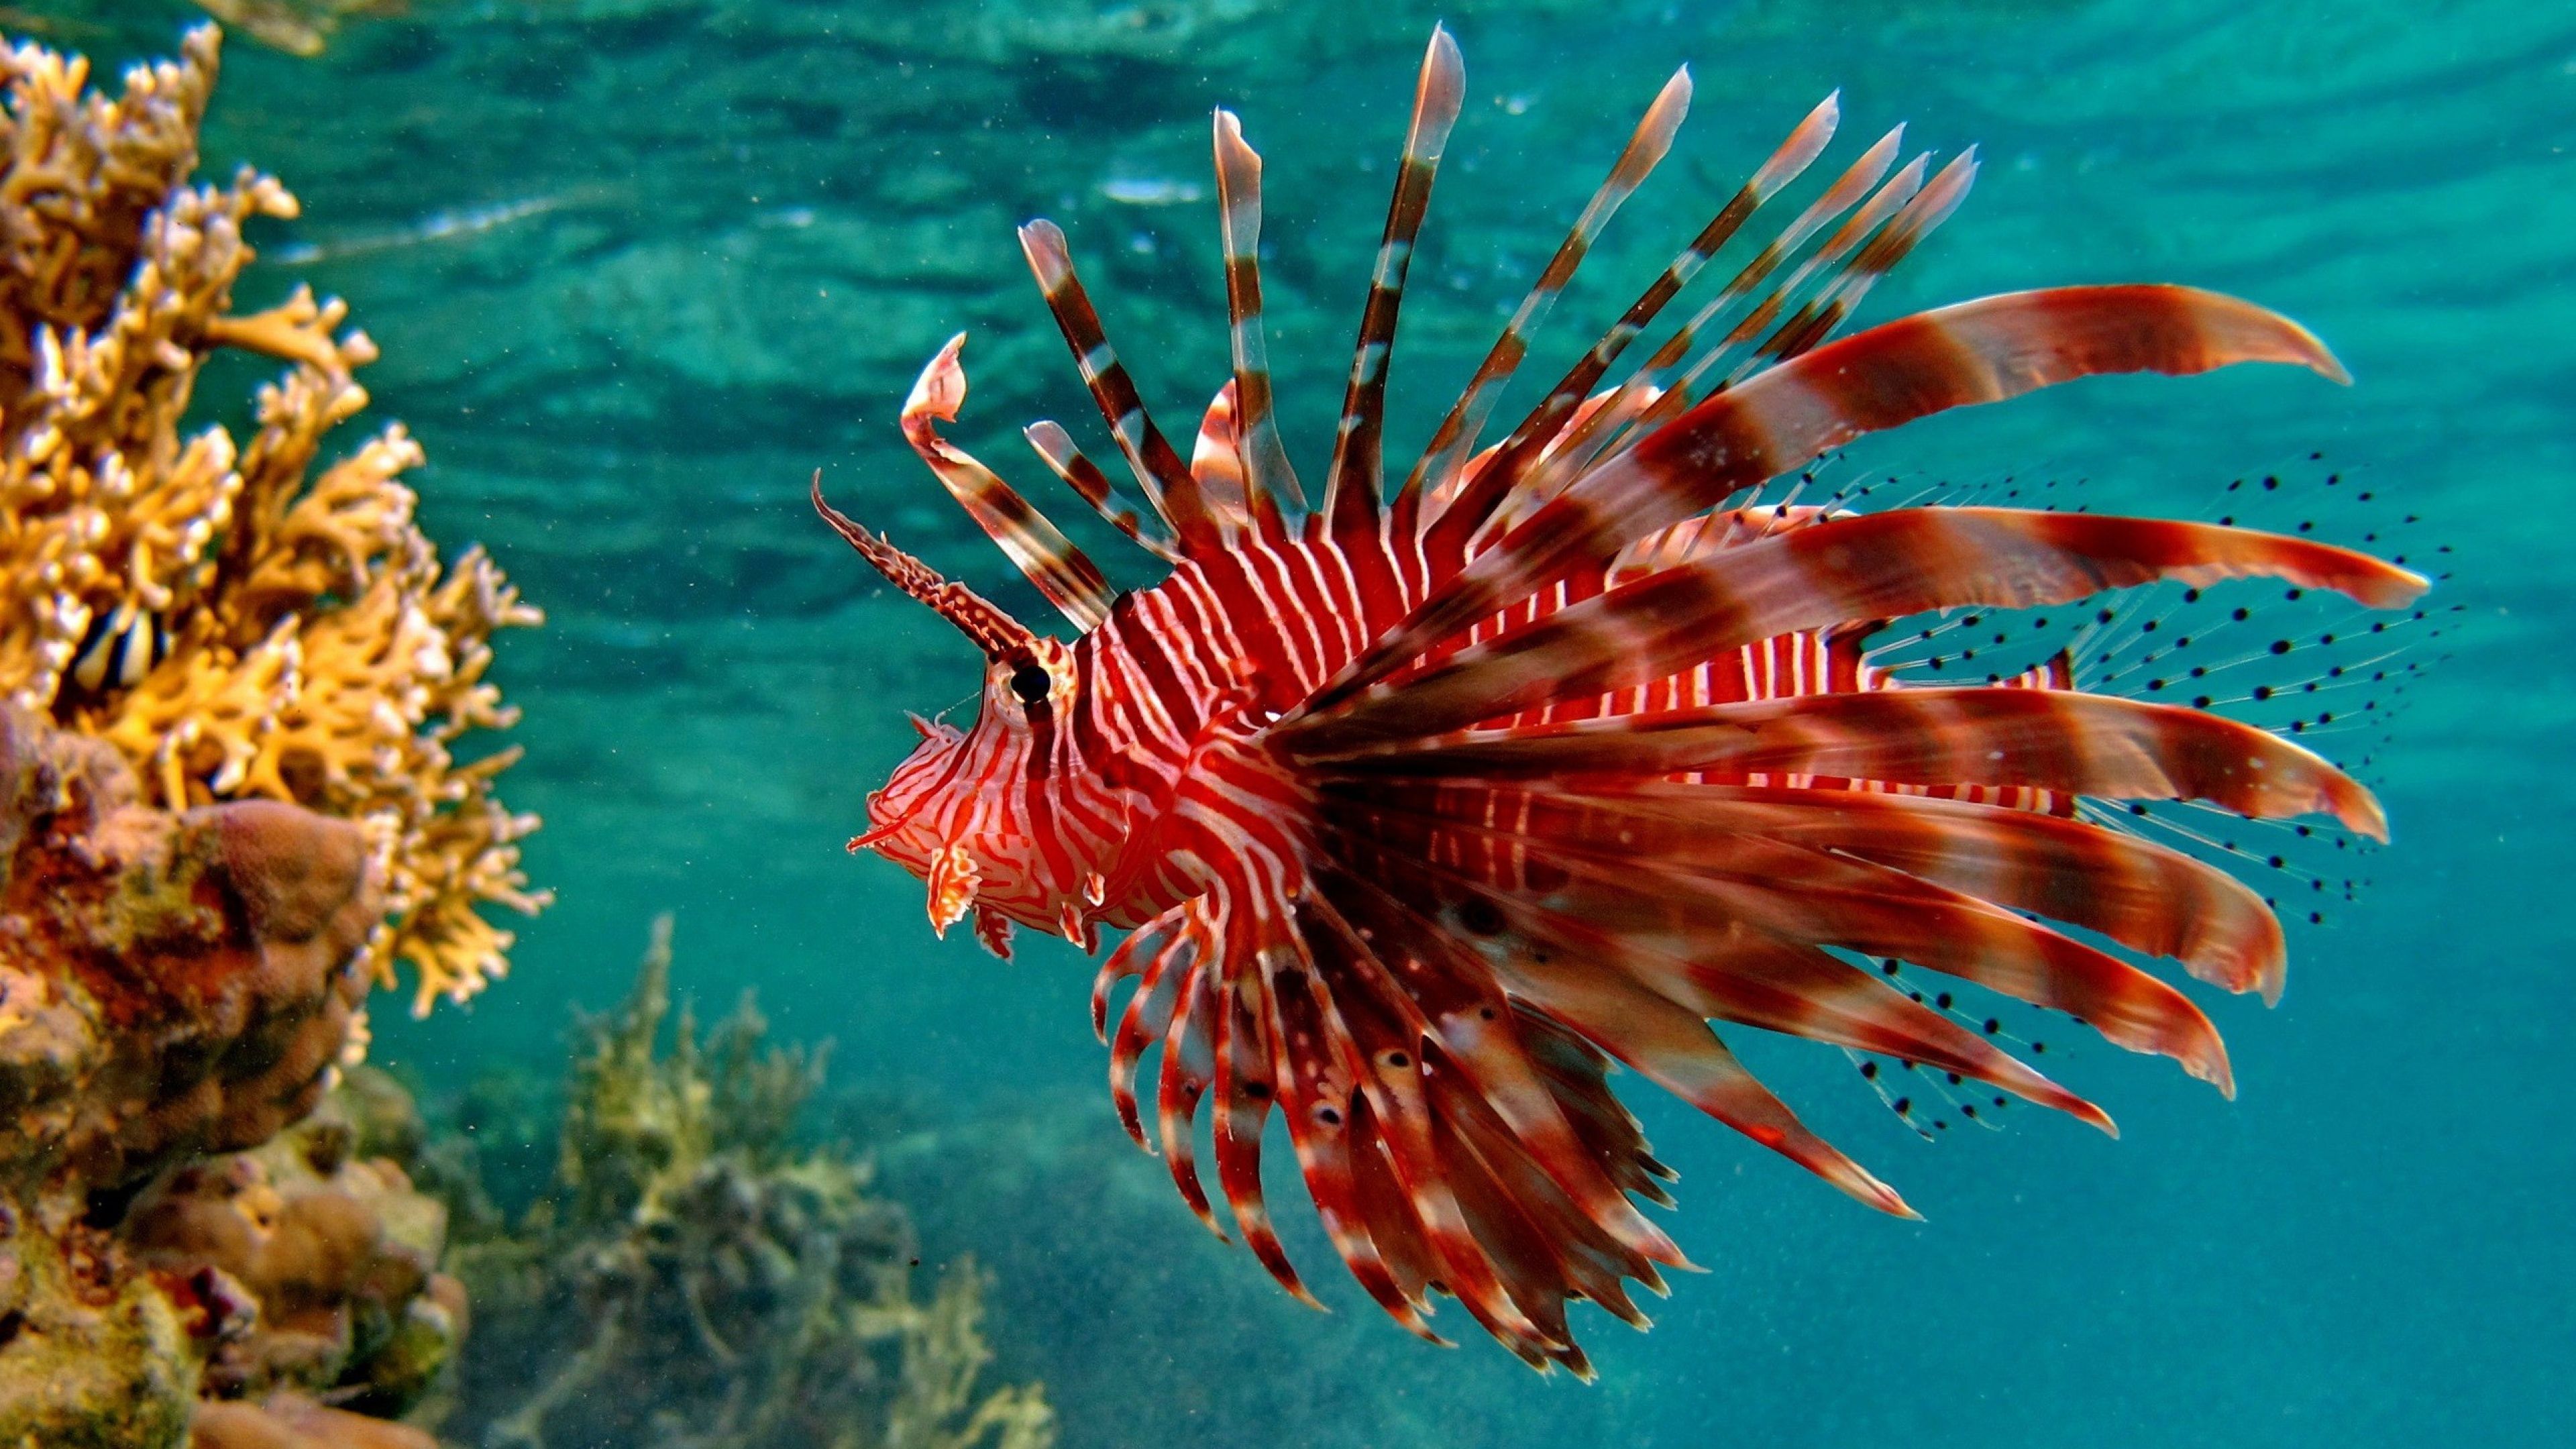 عکس ماهی Lionfish قرمز رنگ با ظاهر عجیب و دیدنی